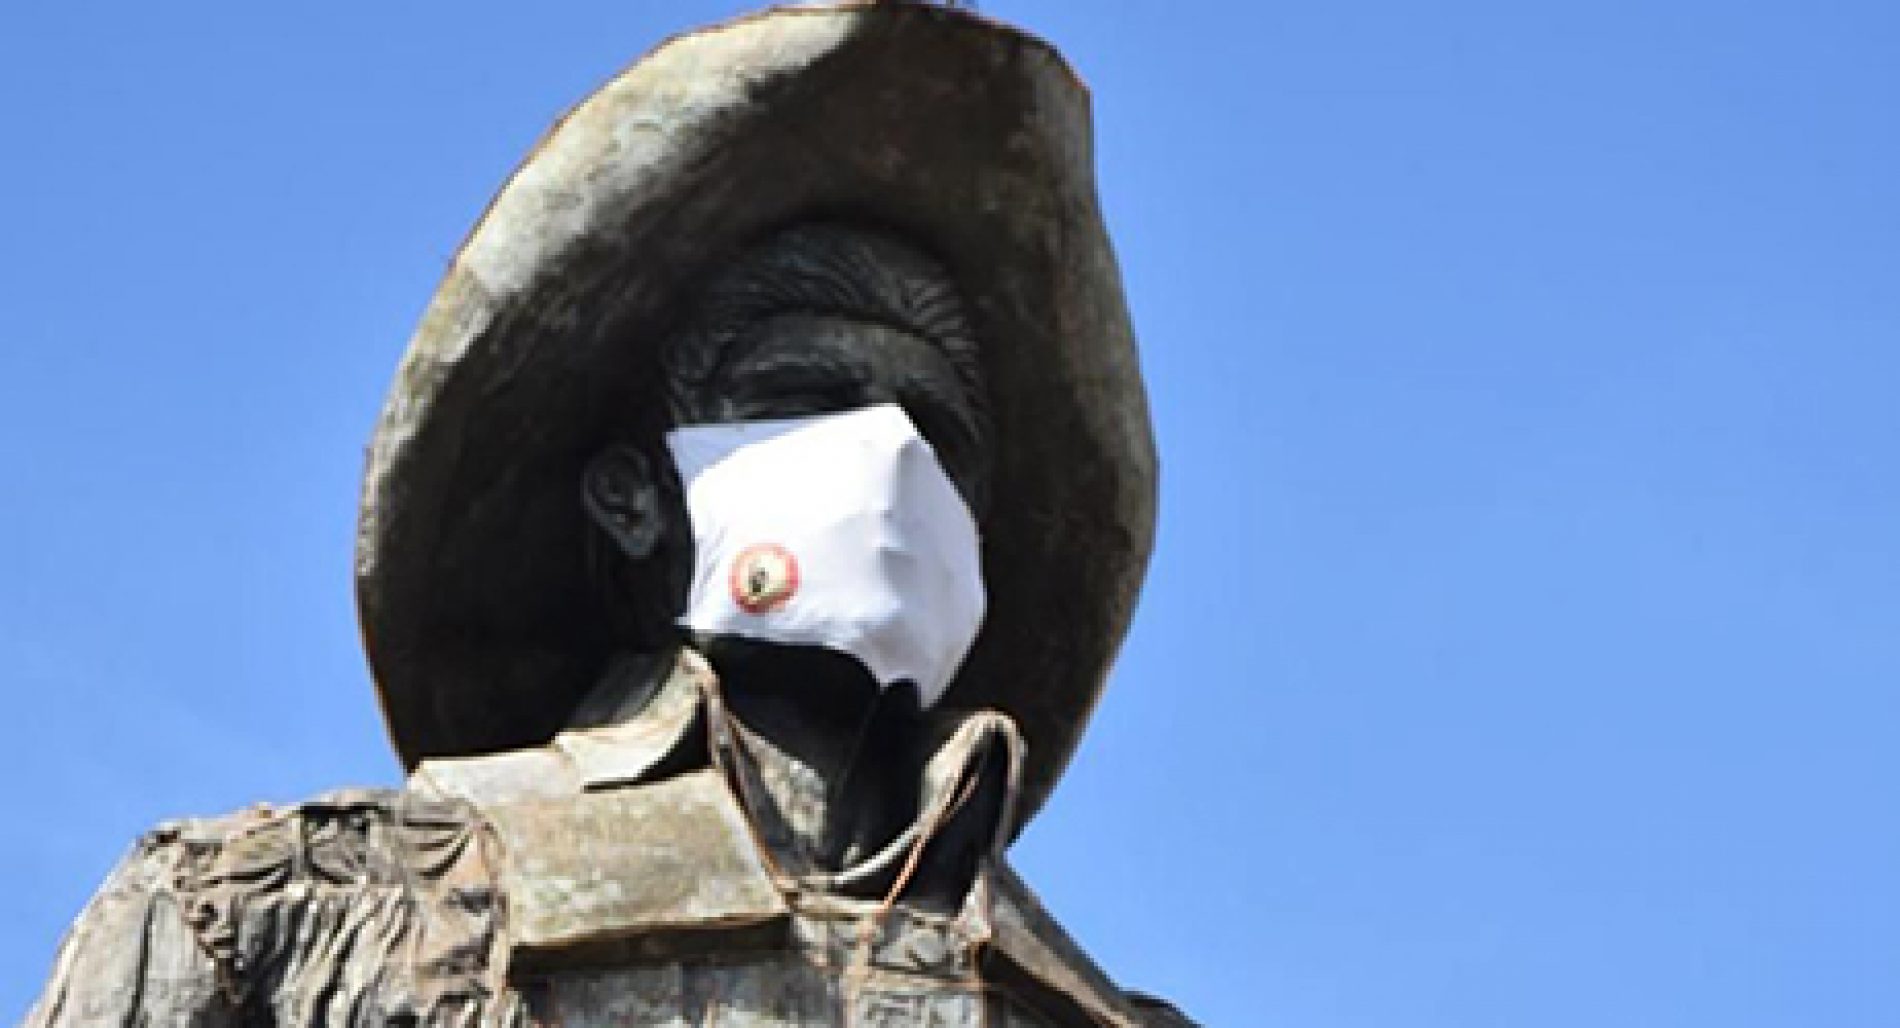 BARRETOS: Monumento do Parque do Peão ganha máscara para incentivar proteção contra coronavírus